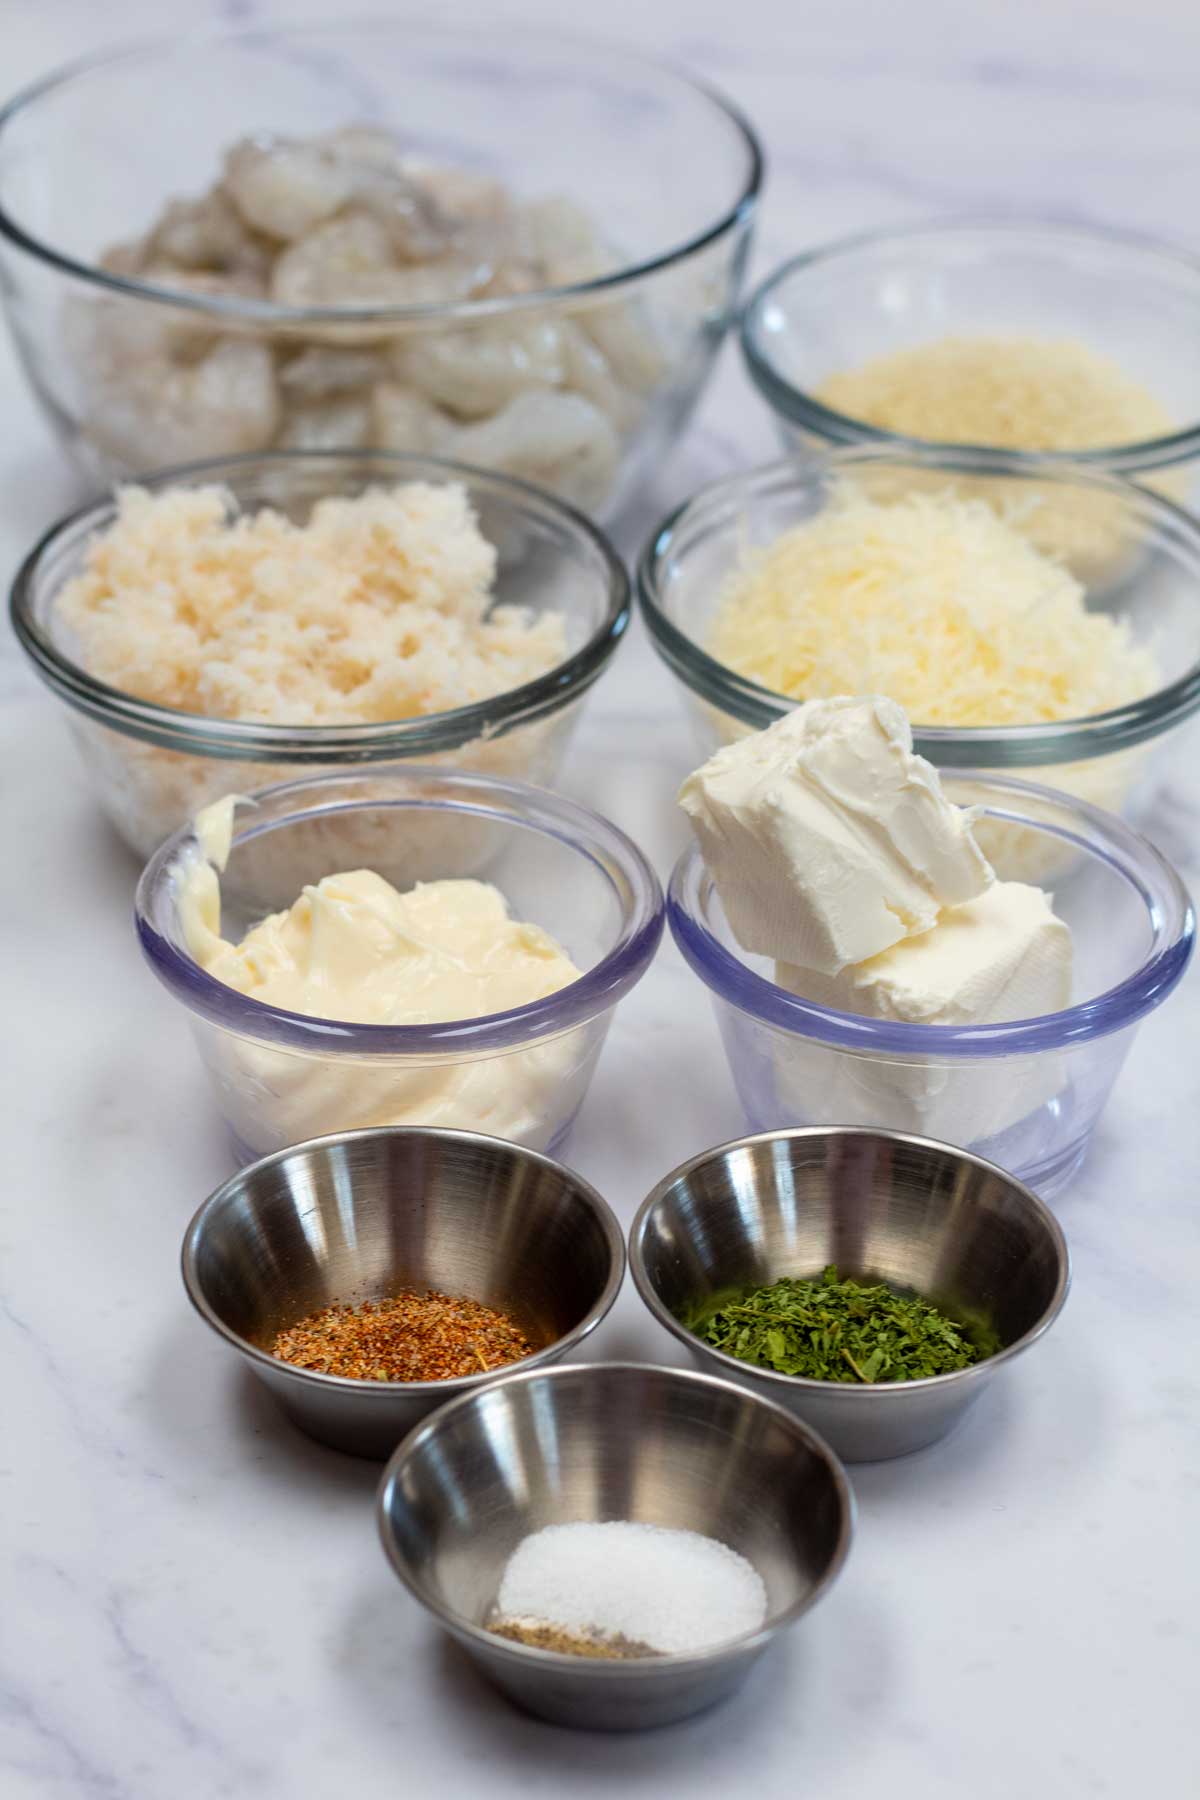 Immagine alta che mostra gli ingredienti necessari per i gamberetti ripieni di granchio.